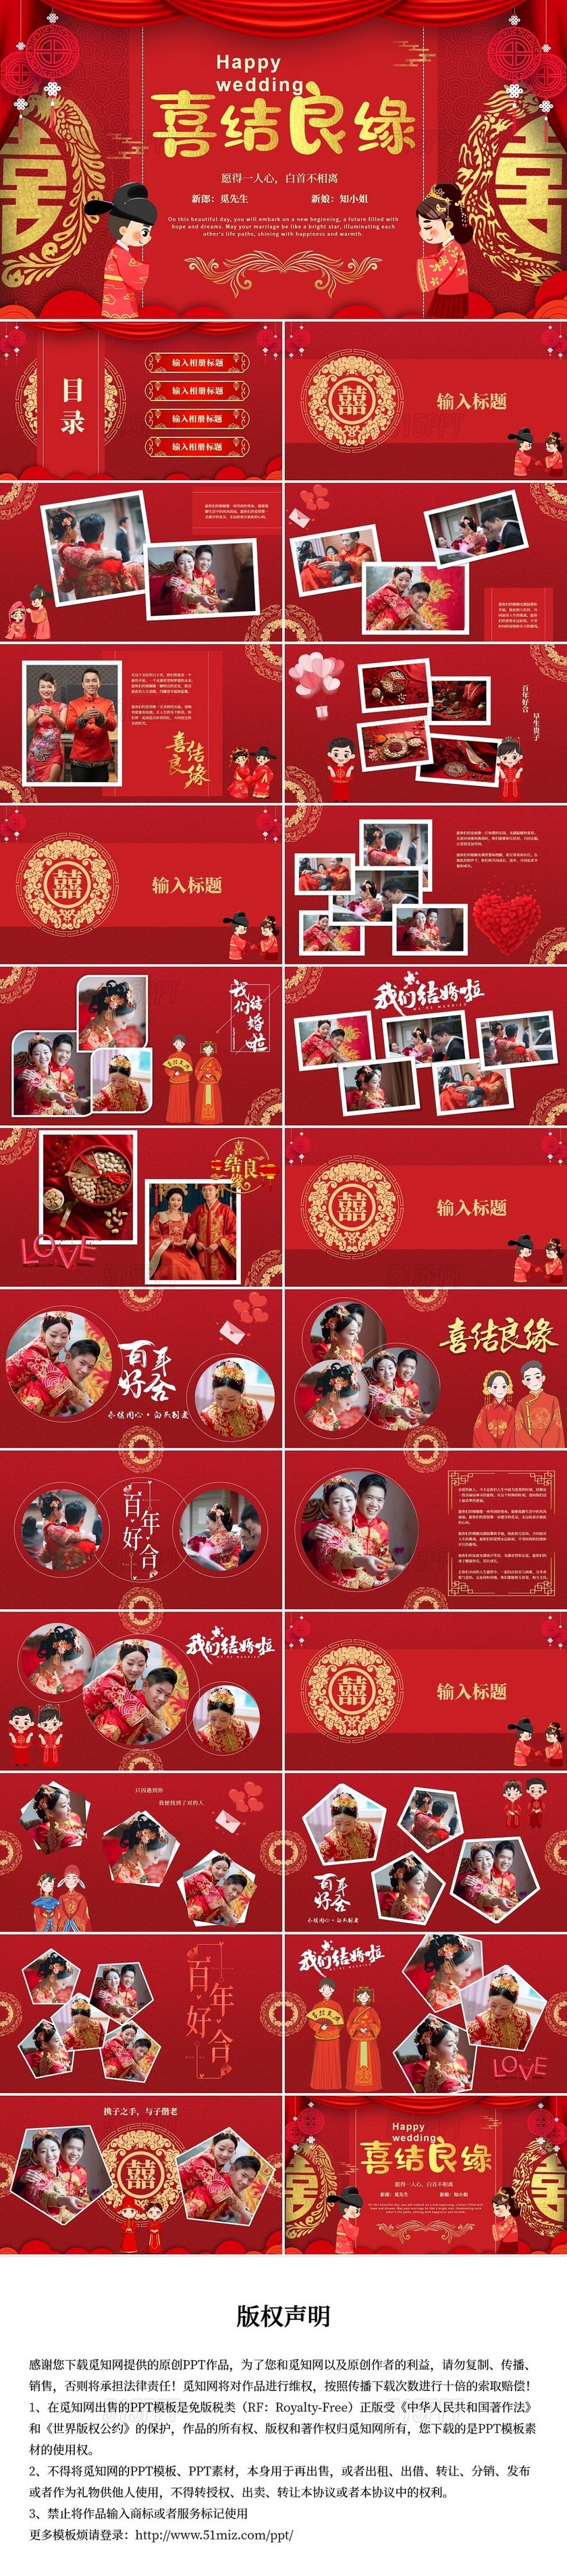 红色中国风中式婚礼相册PPT